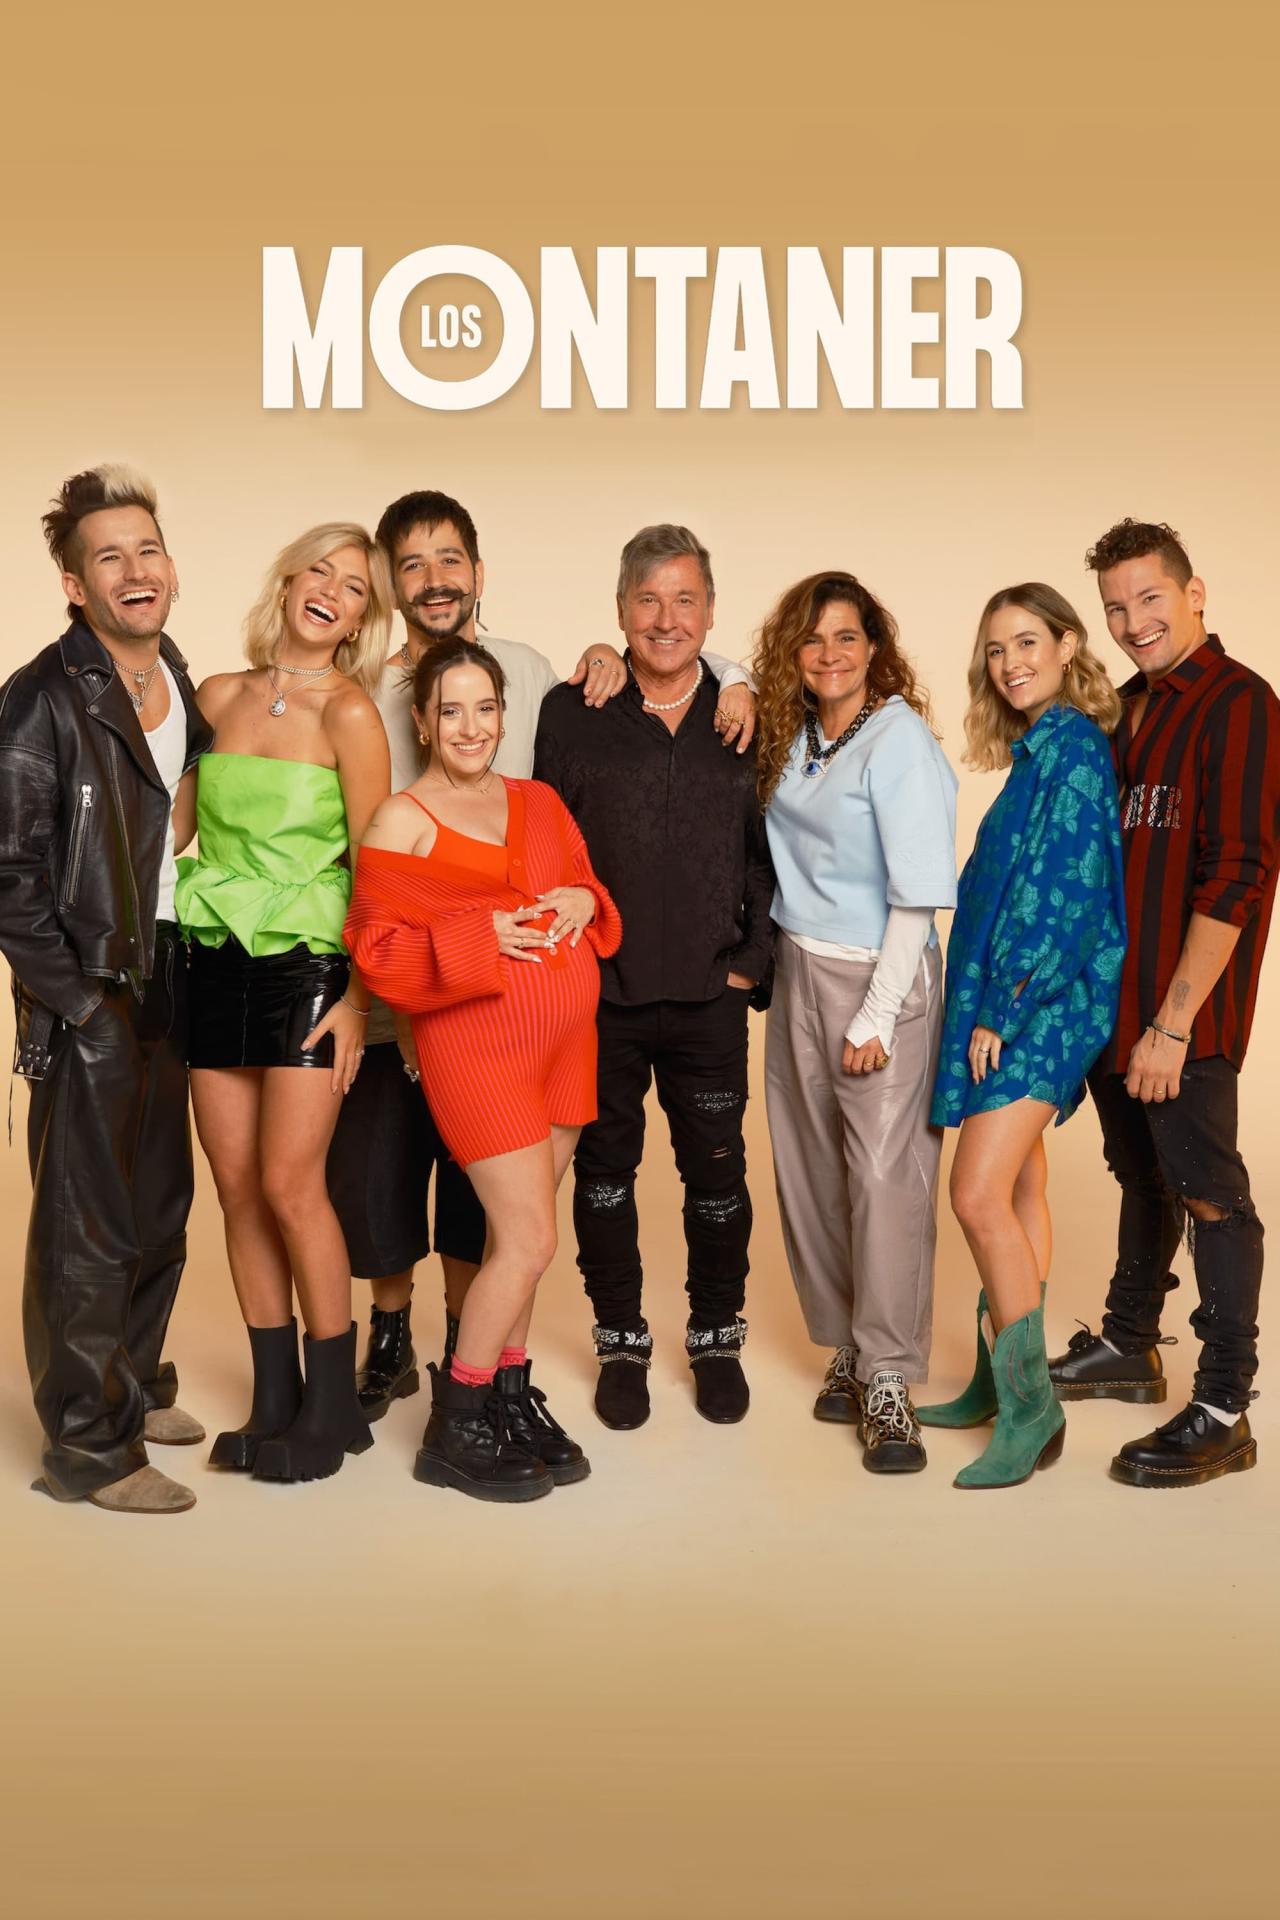 Les saisons de La famille Montaner sont-elles disponibles sur Netflix ou autre ?